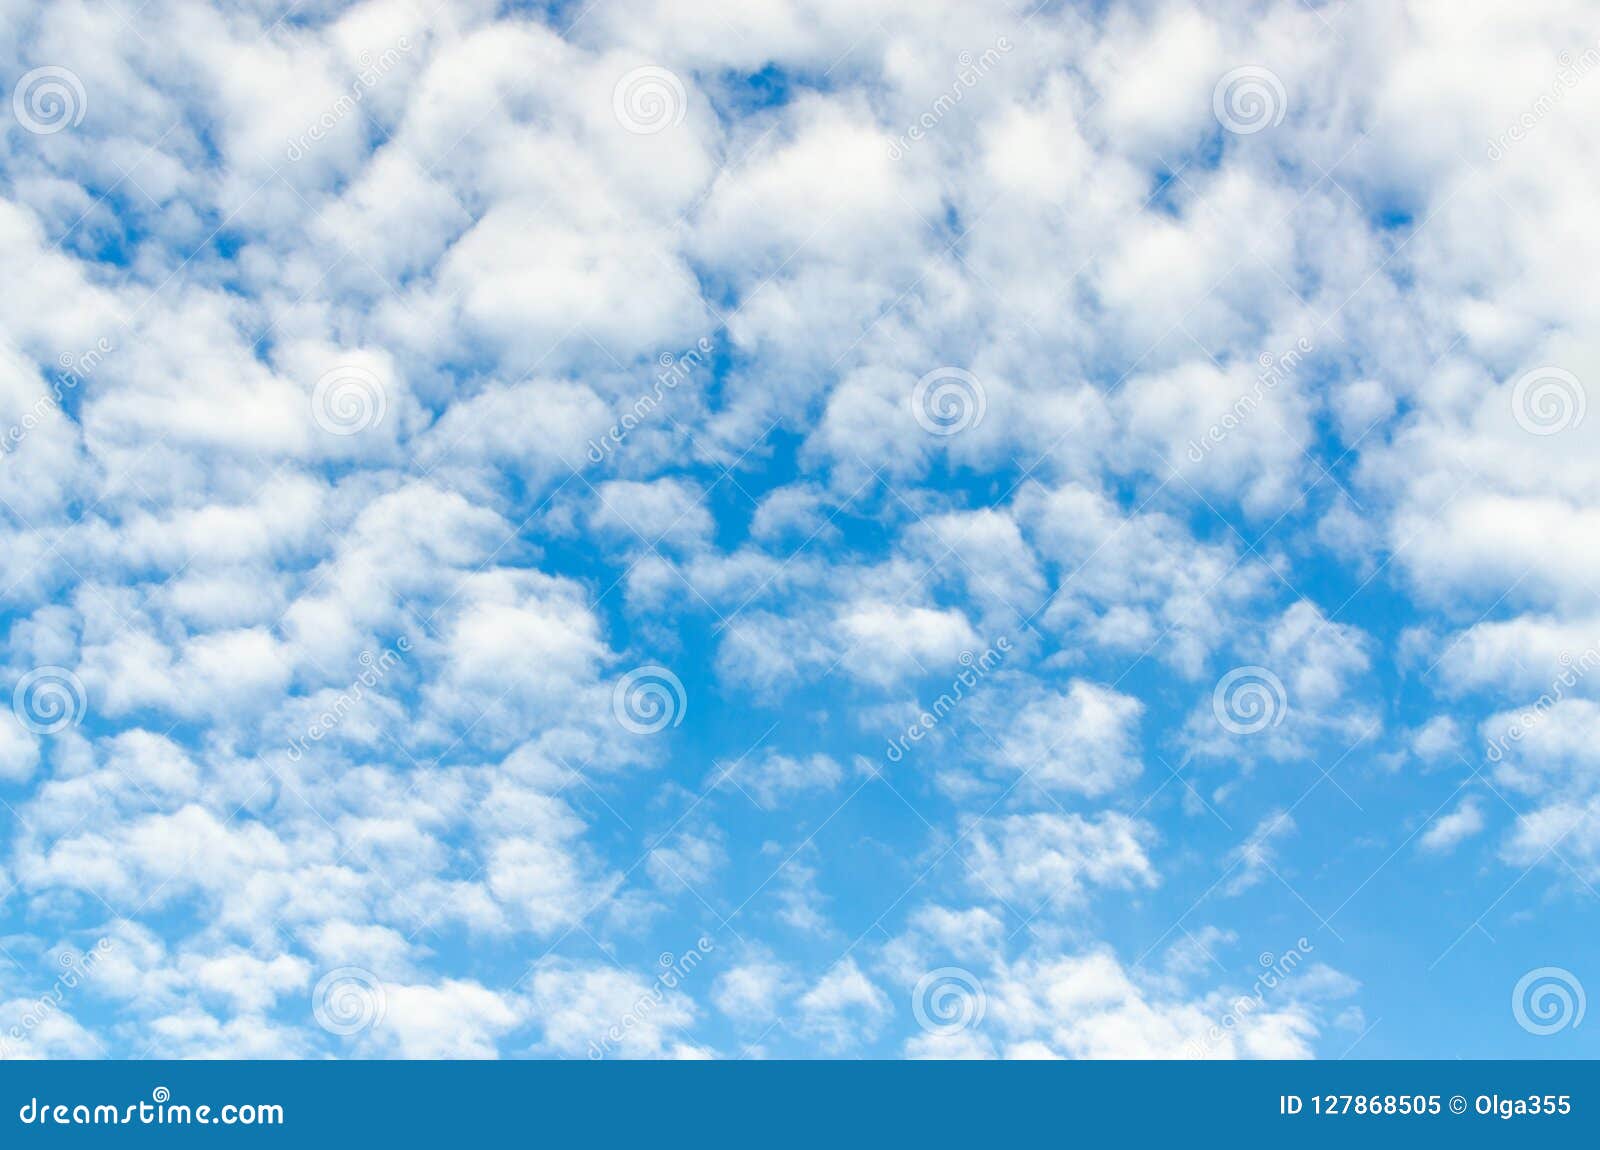 cirro-cumulus clouds in blue sky, background